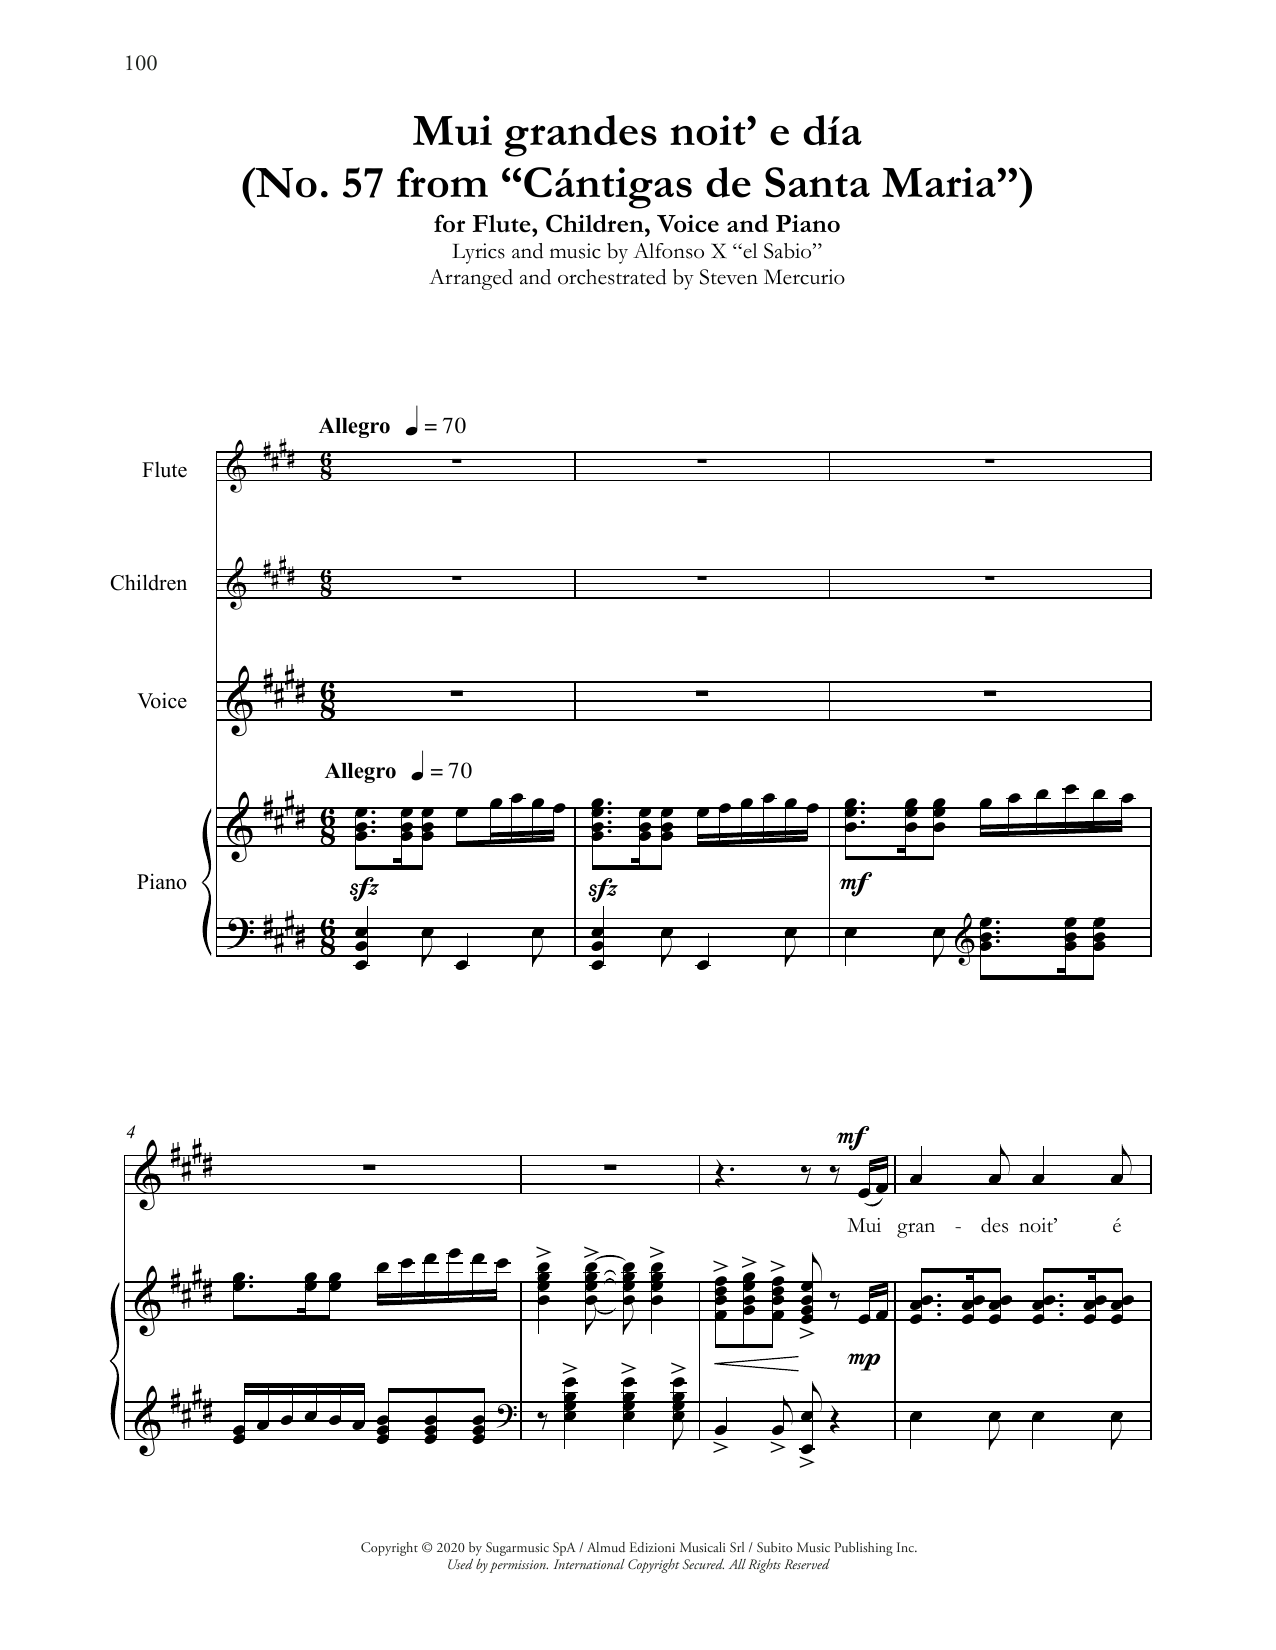 Andrea Bocelli Mui grandes noit' e día (No. 57 from Cántigas de Santa Maria) (arr. Steven Mercurio) sheet music notes and chords arranged for Piano & Vocal